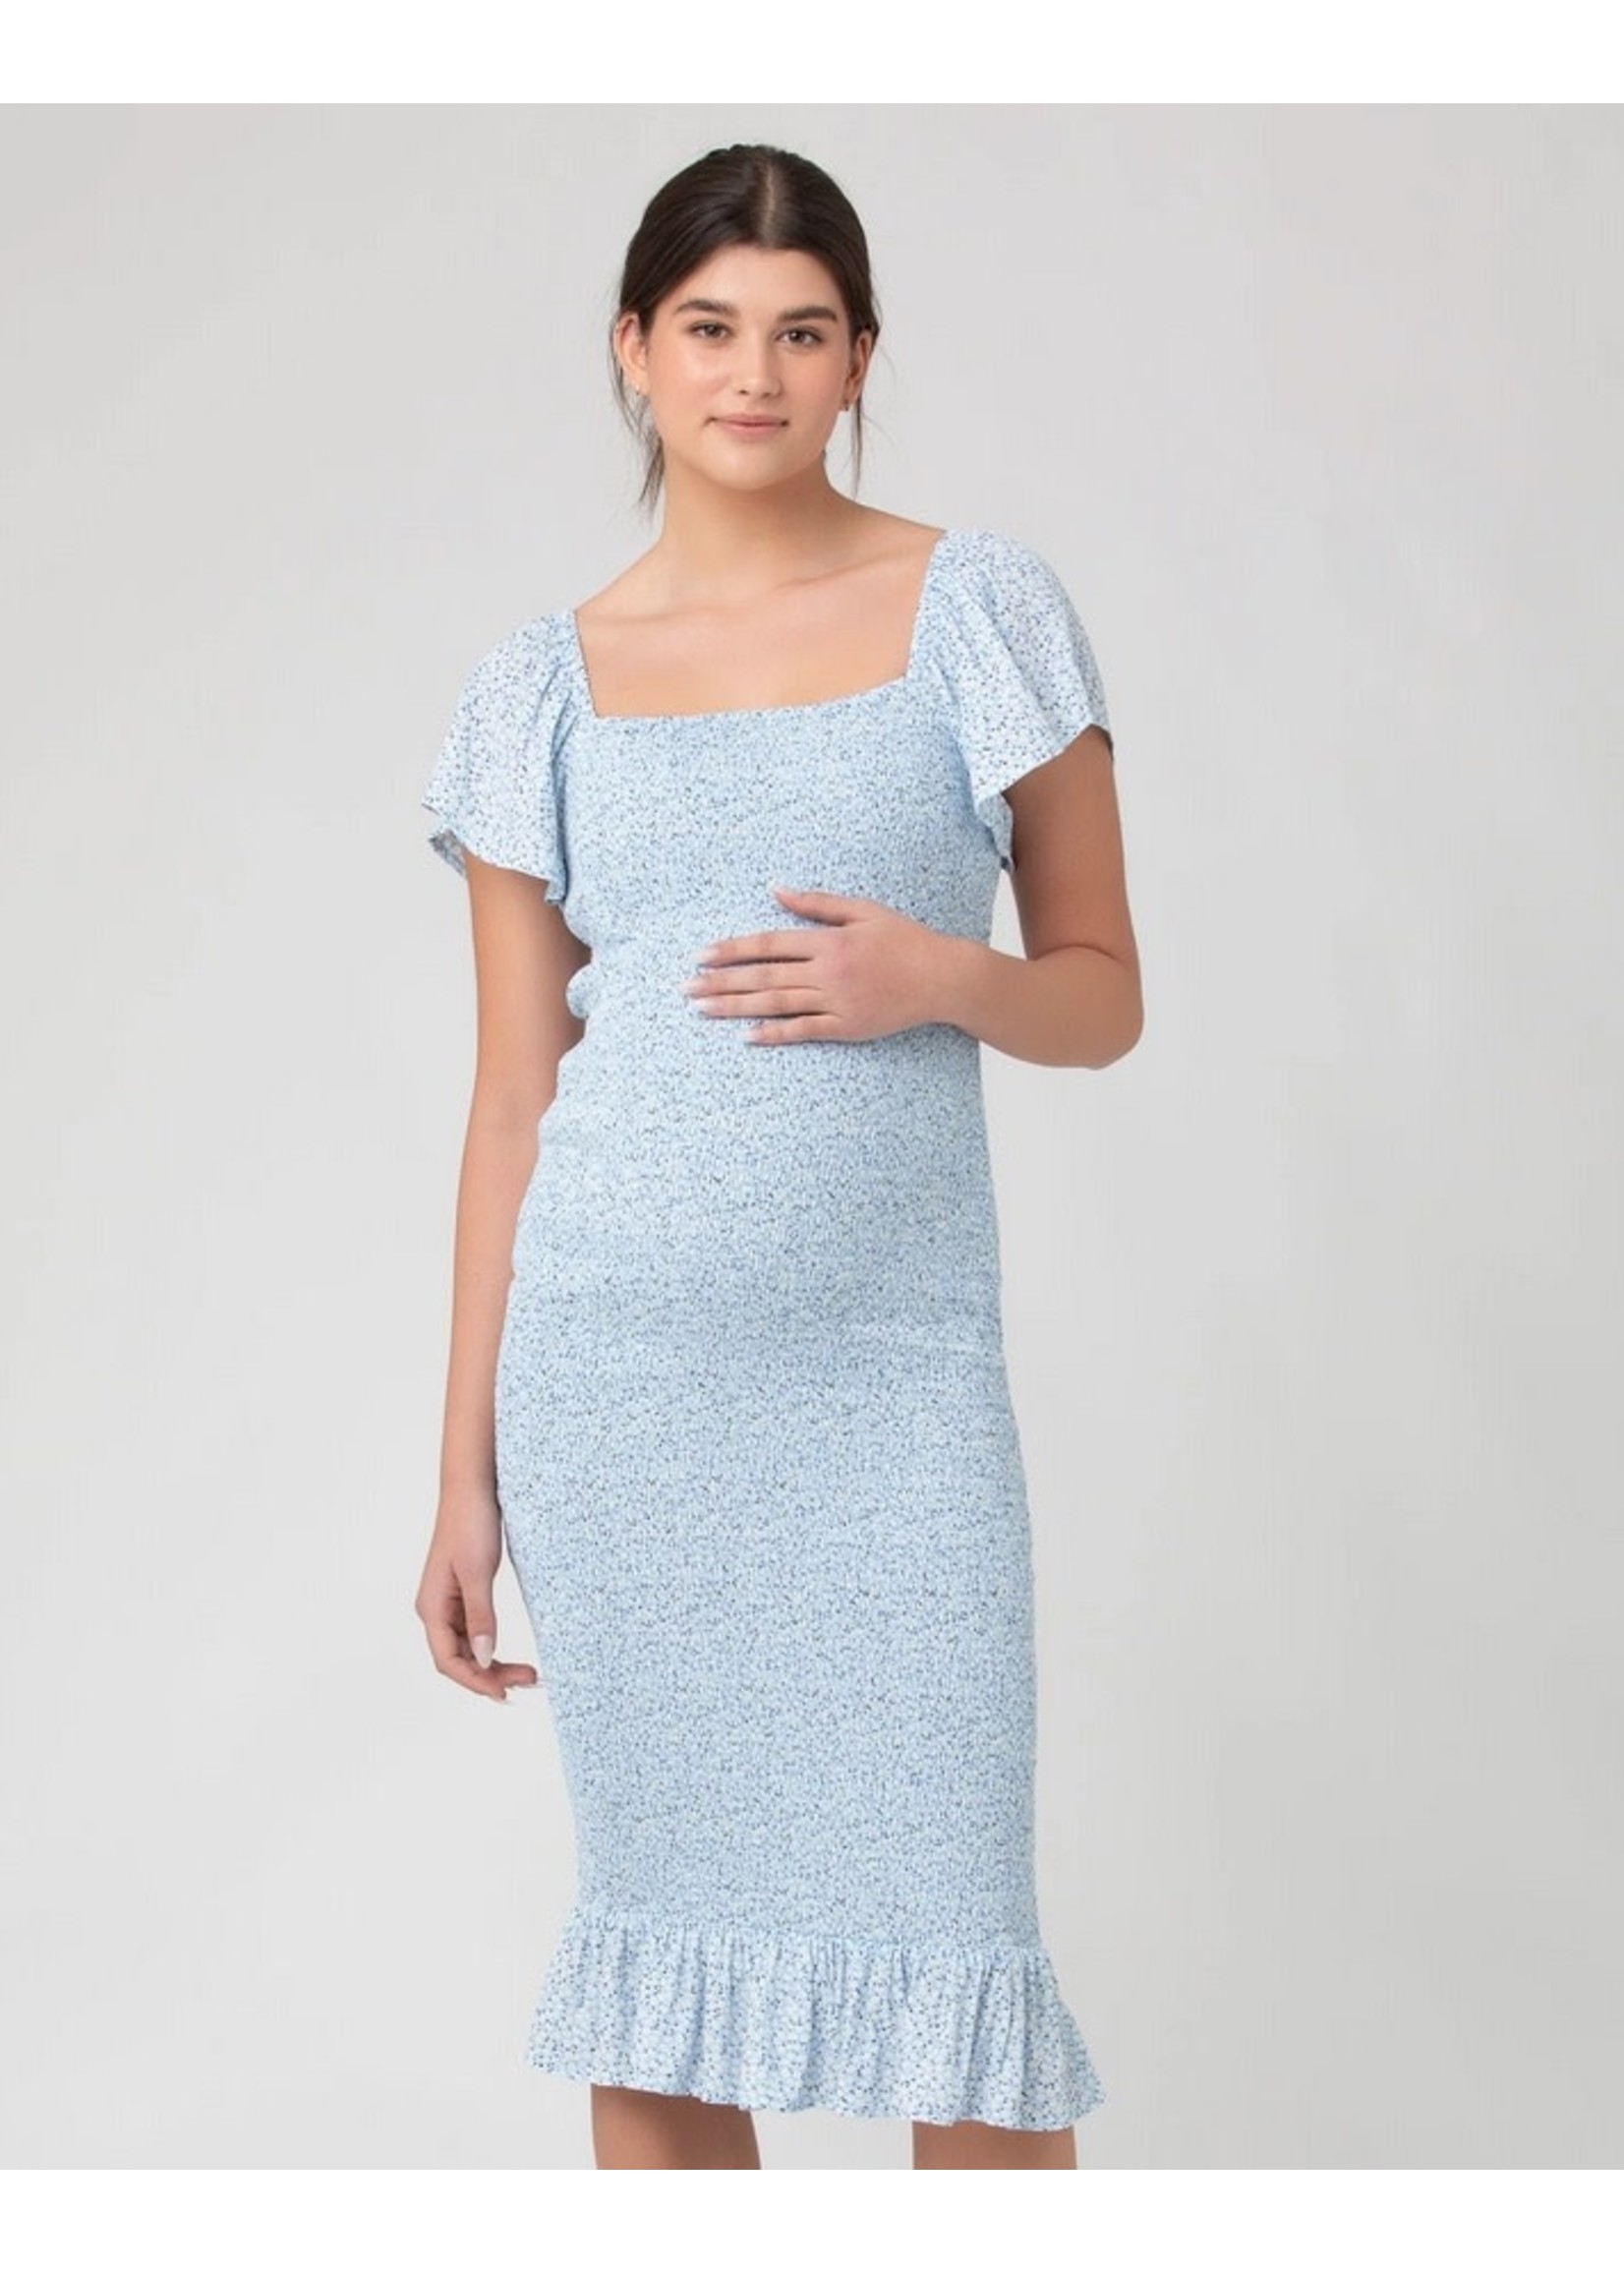 Ripe Maternity Ripe Maternity, Selma Shirred Dress || Pale Blue